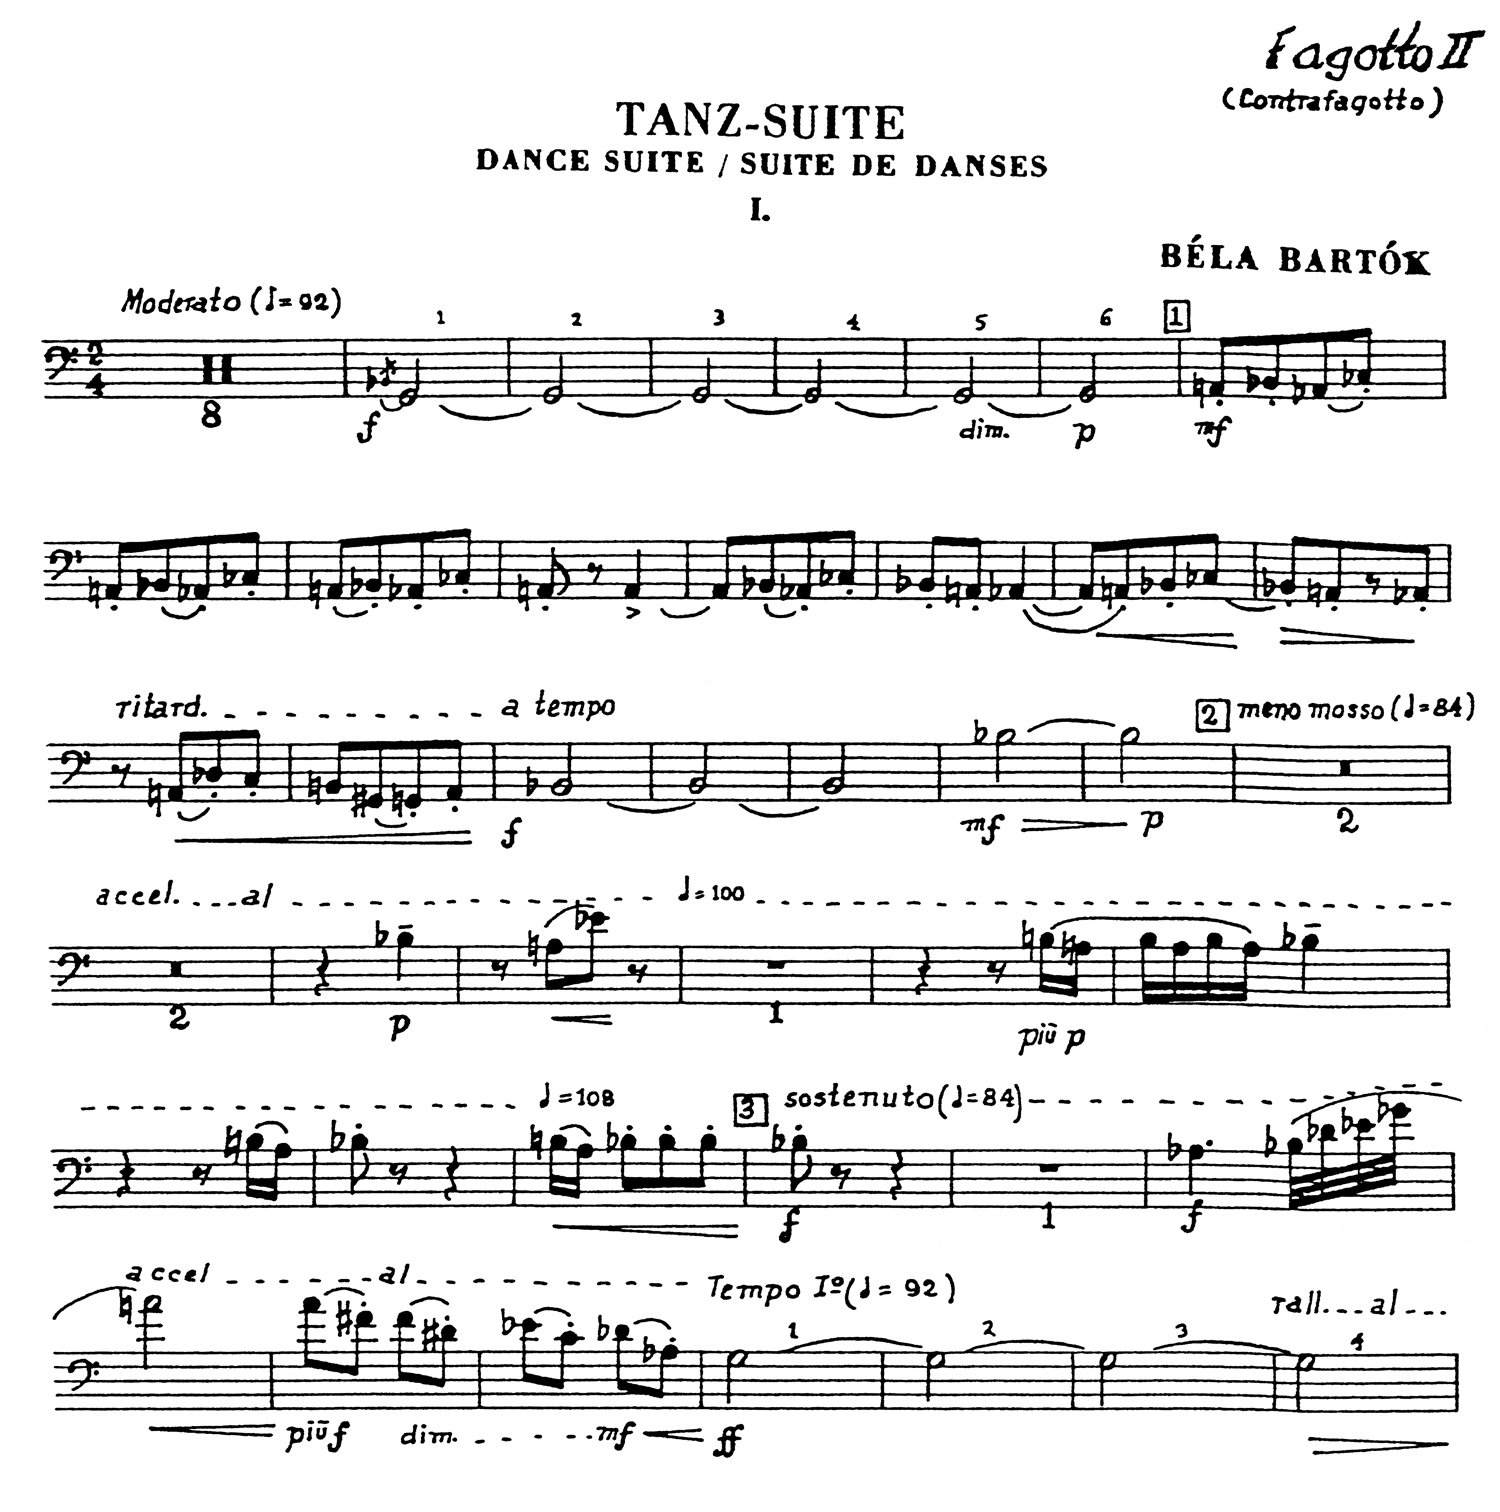 Bartok Dance Suite Part 2.jpg